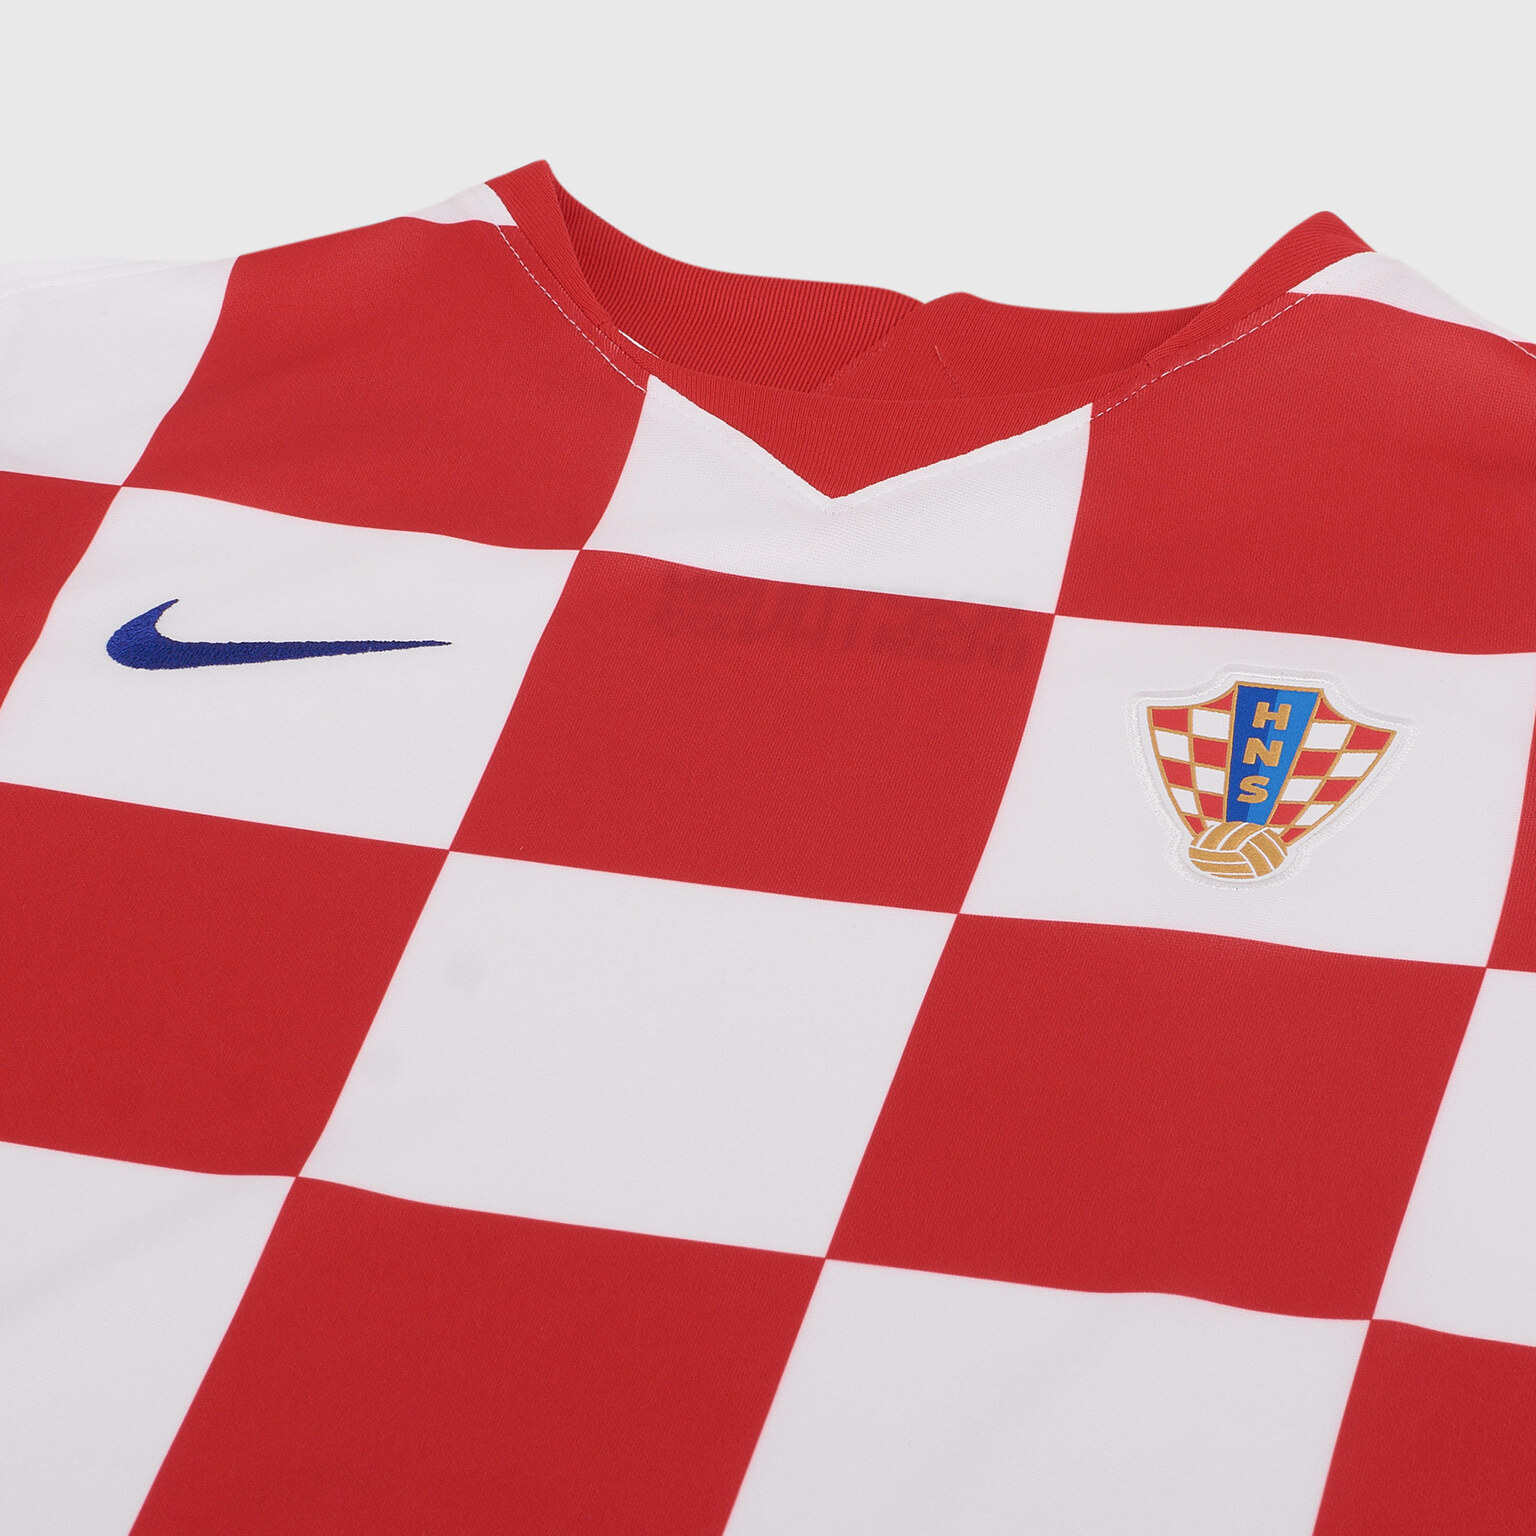 Футболка домашняя подростковая Nike сборной Хорватии сезон 2020/21